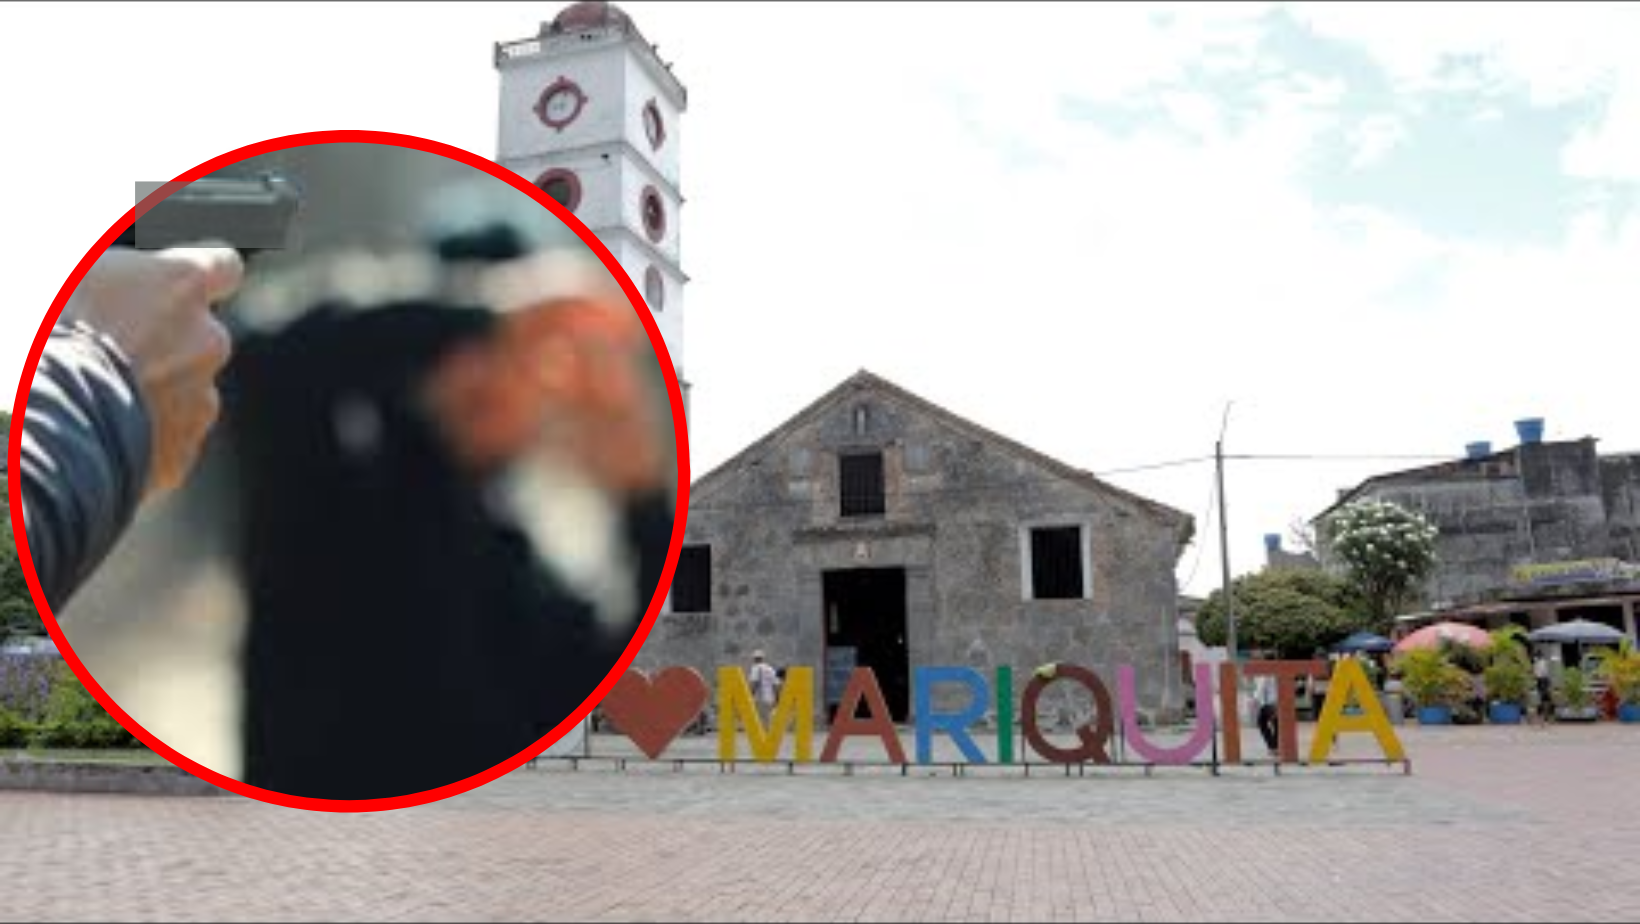 Ola de violencia en Mariquita: otro hombre herido de bala en presunto acto sicarial